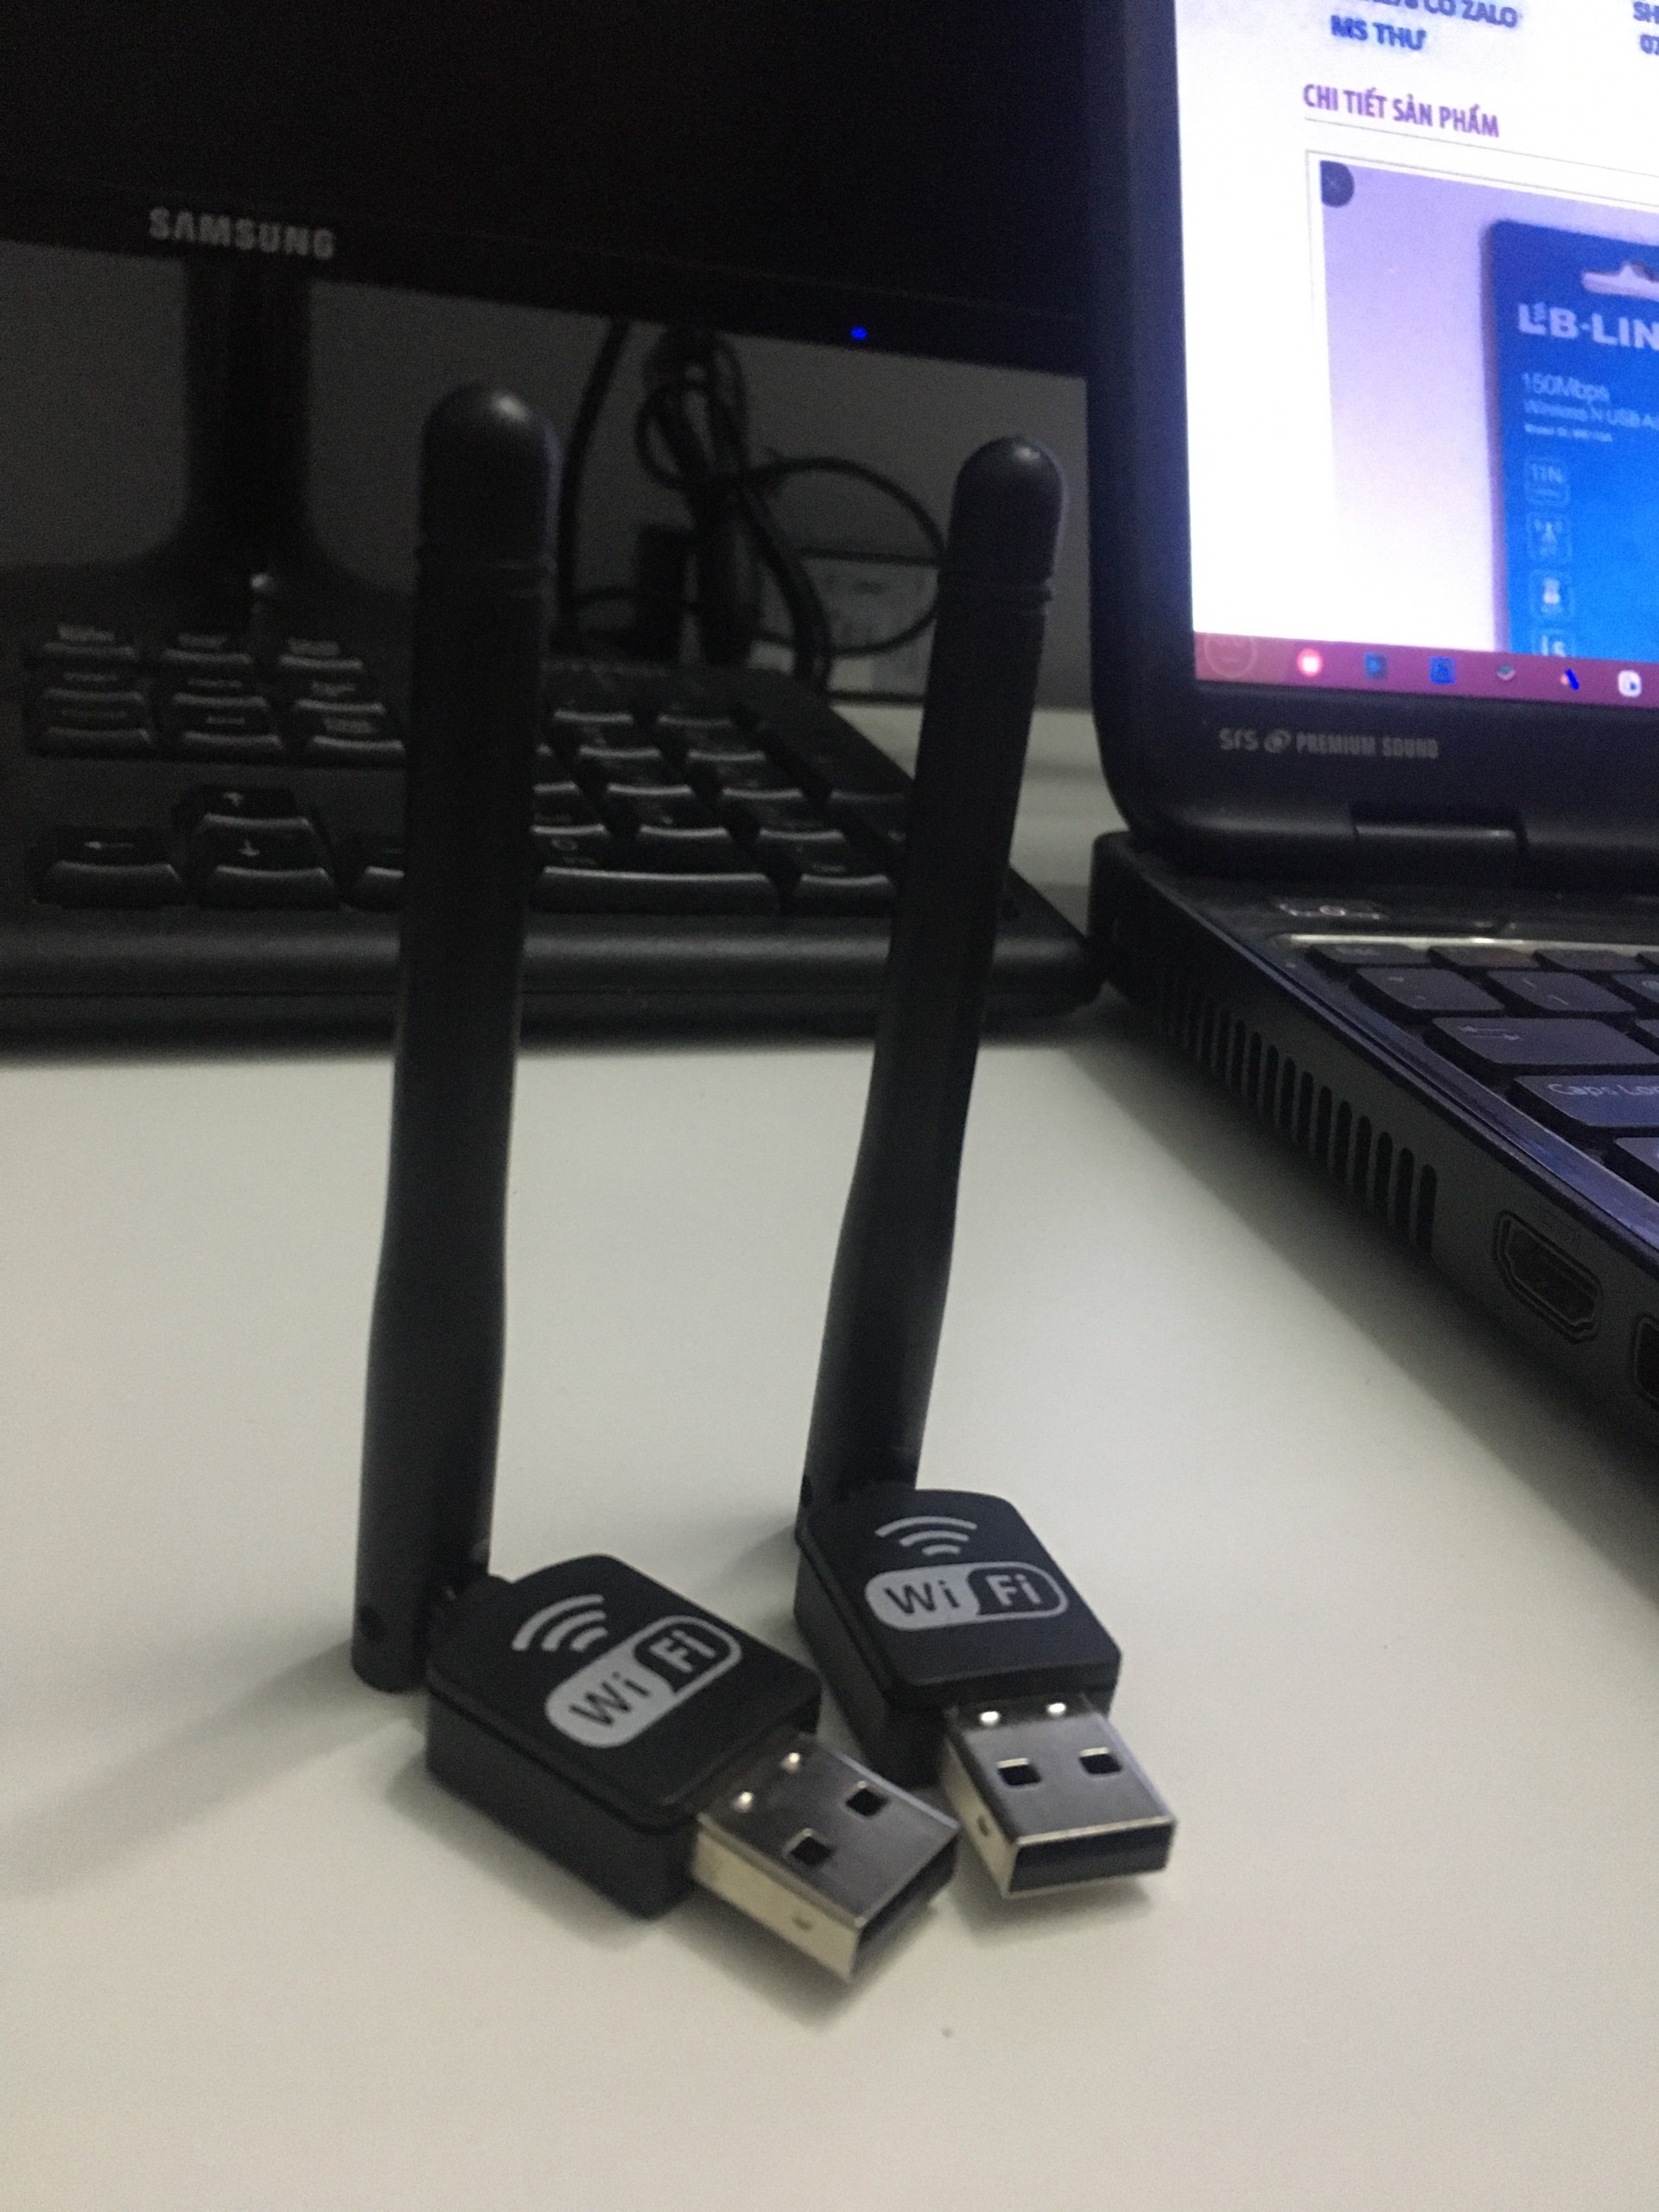 2 cây usb wifi 802.11 có anten thu wifi cho máy tính bàn, laptop (dư nên bán hàng còn dùng tốt bao xài)